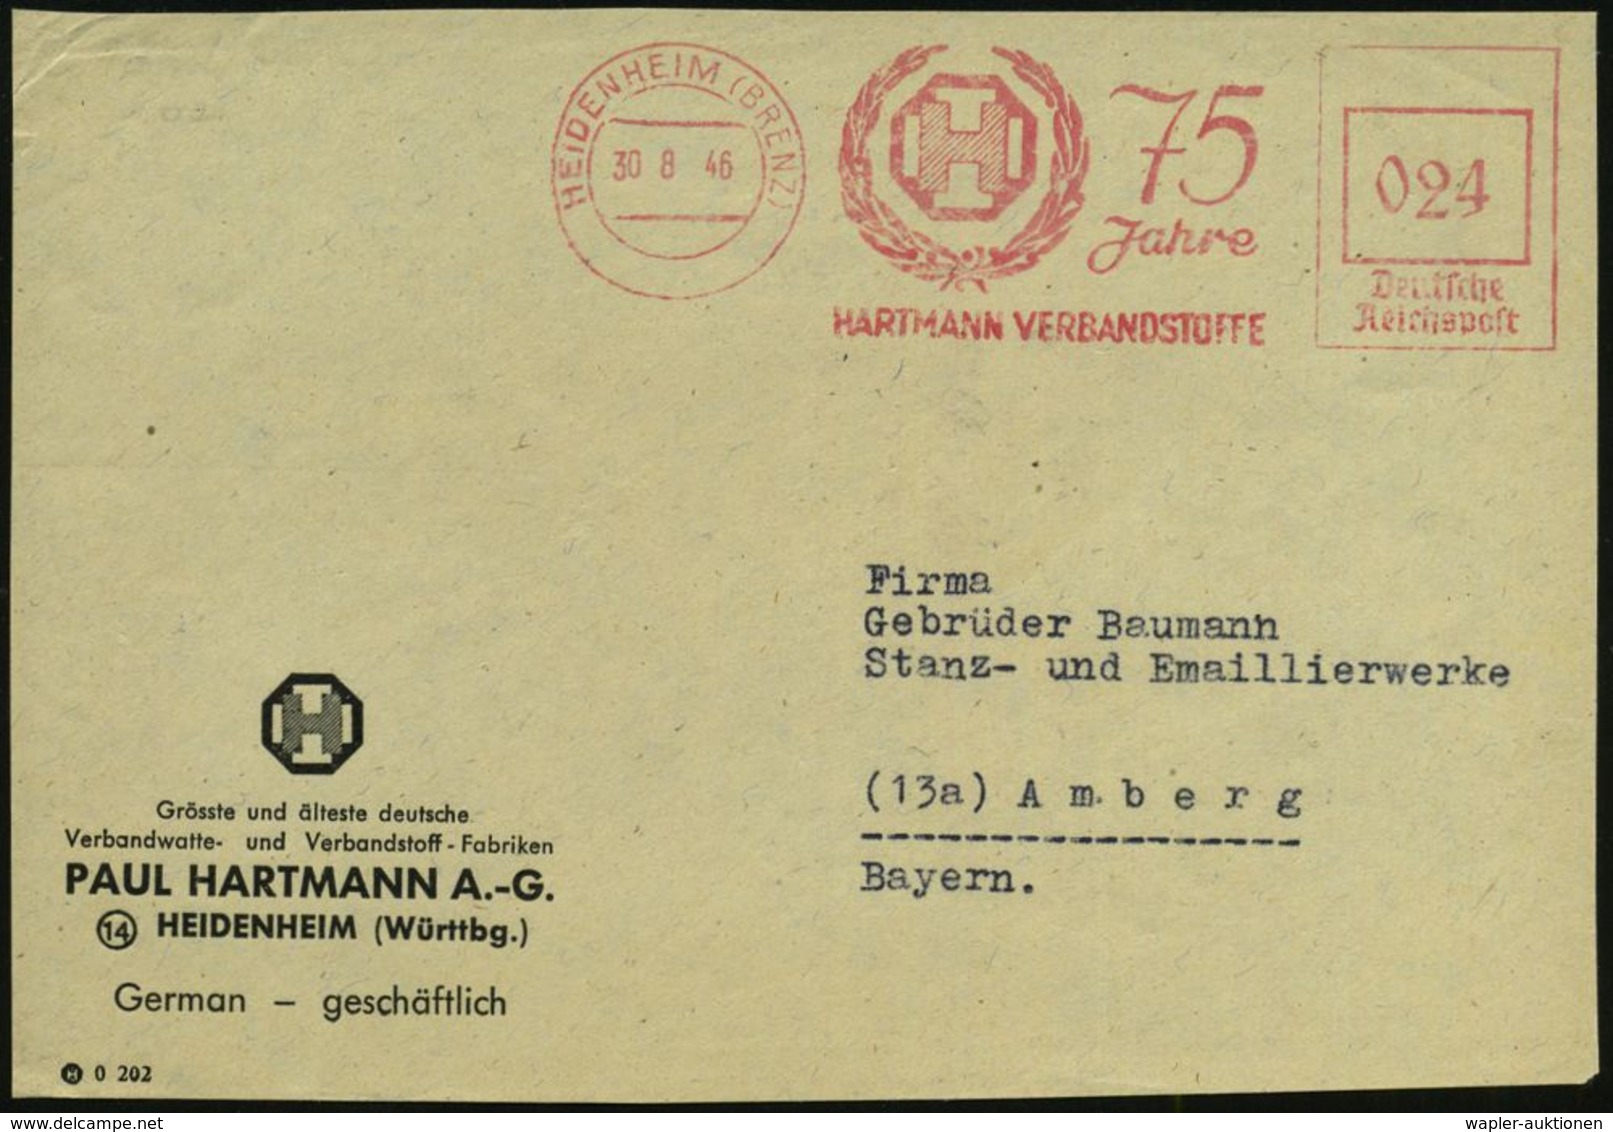 MEDIZINISCHE AUSRÜSTUNG & INSTRUMENTE : HEIDENHEIM (BRENZ)/ 75 Jahre/ HARTMANN VERBANDSSTOFFE 1946 (30.8.) Seltener, Apt - Medicina